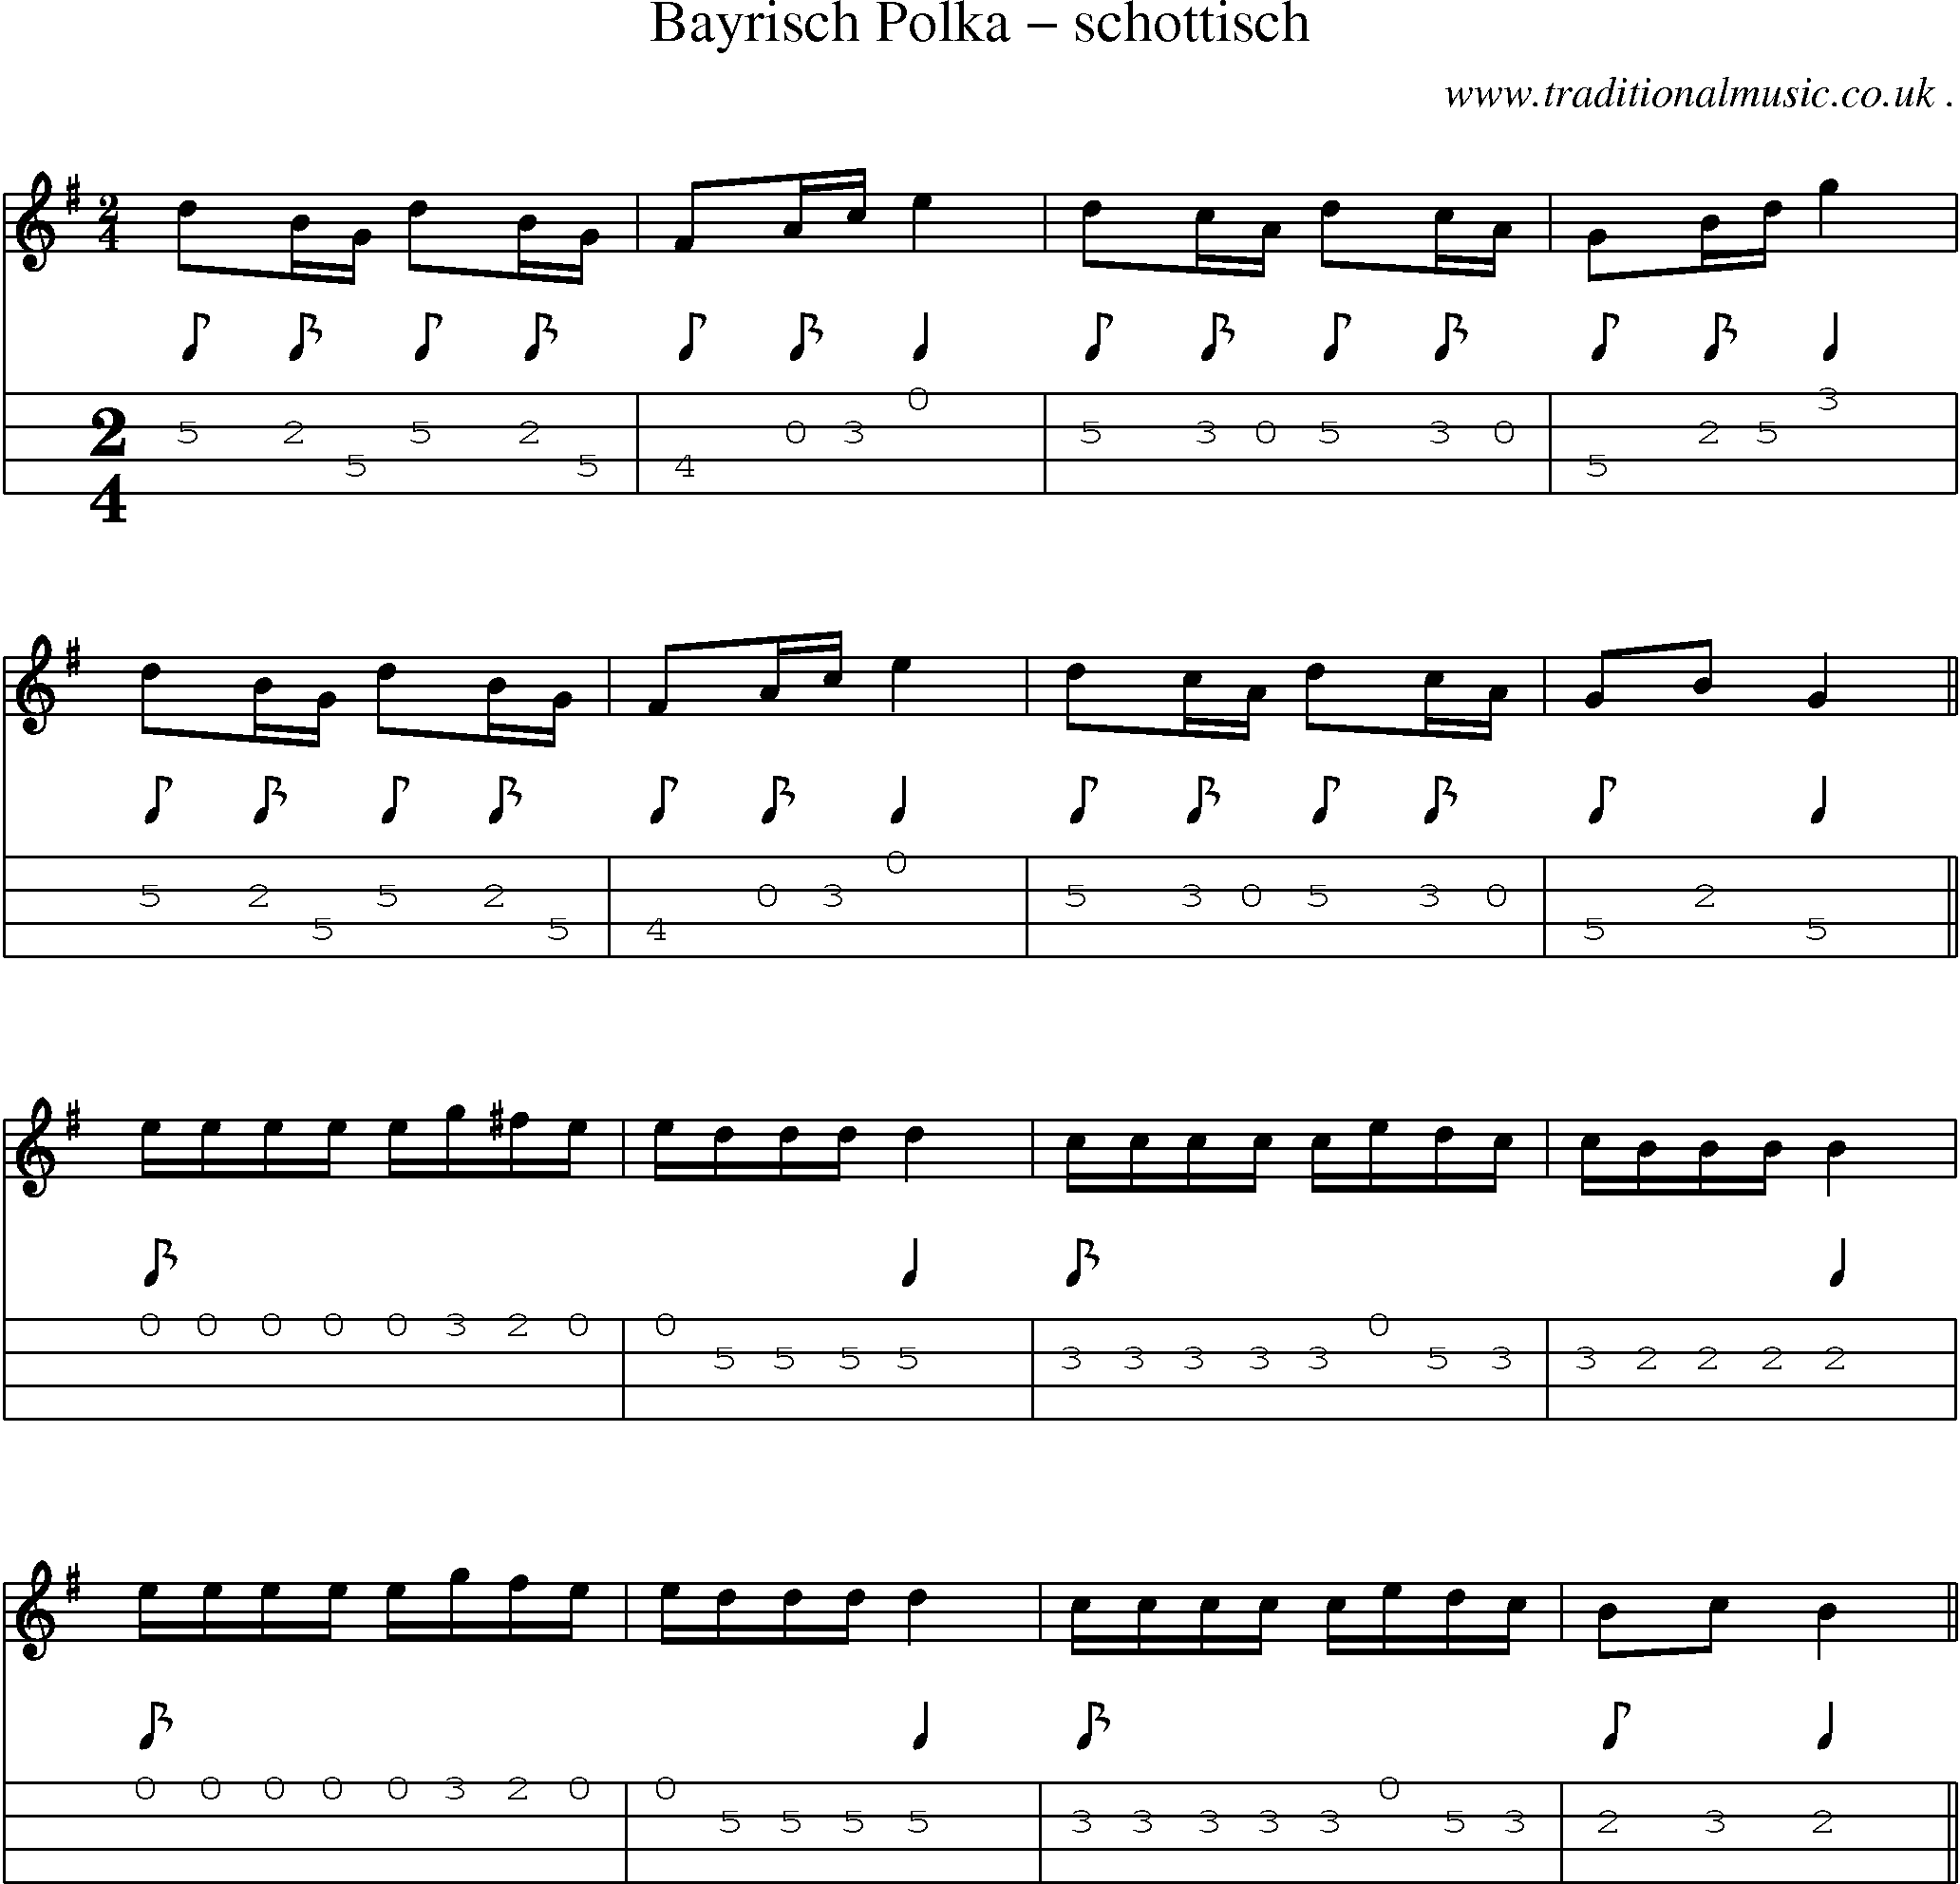 Sheet-Music and Mandolin Tabs for Bayrisch Polka Schottisch